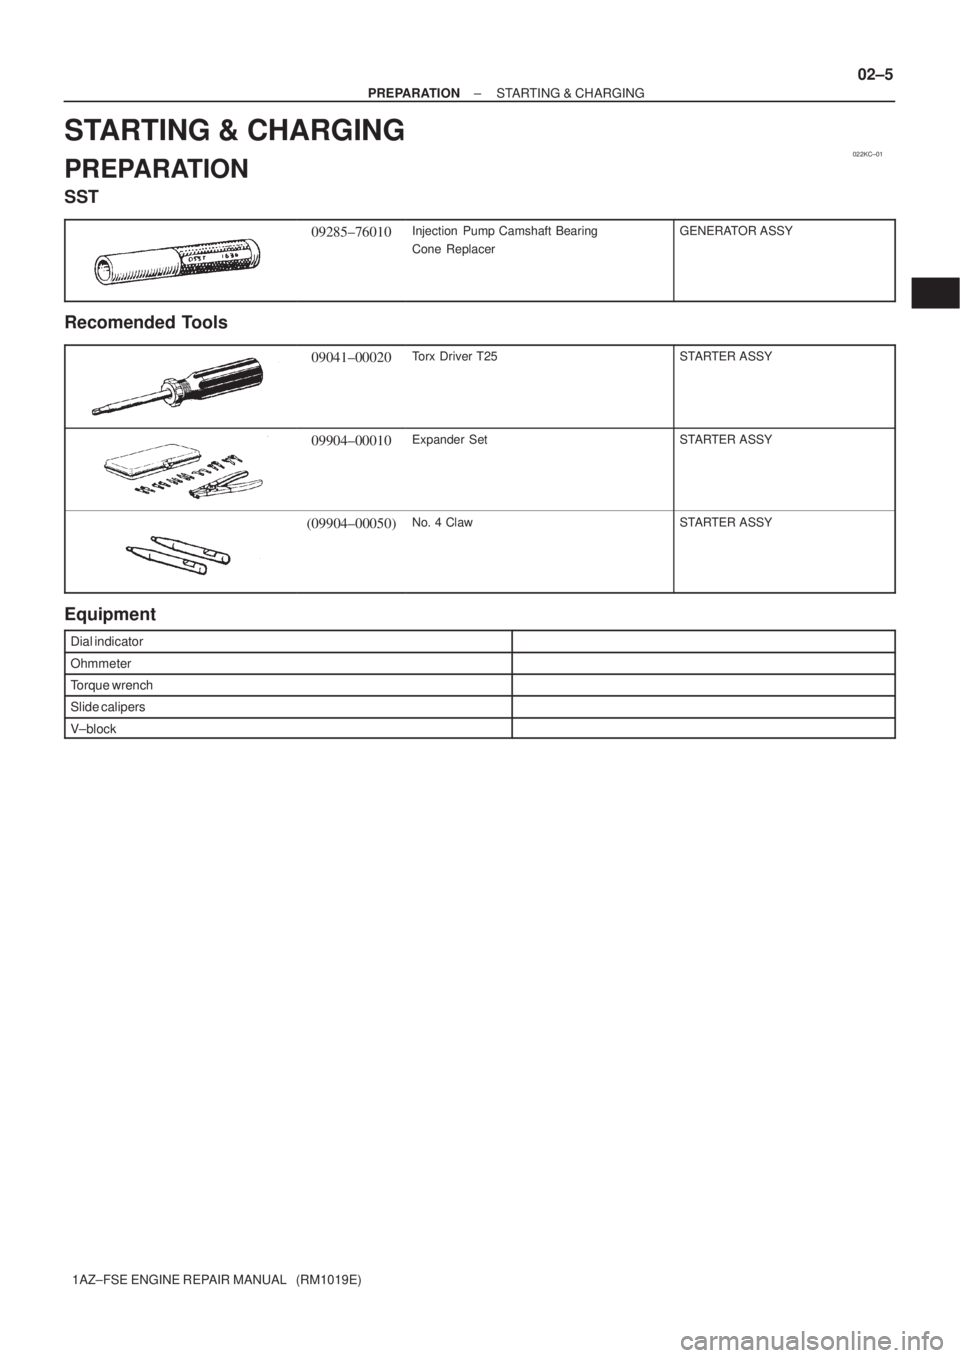 TOYOTA AVENSIS 2005  Service Repair Manual 022KC±01
± PREPARATIONSTARTING & CHARGING
02±5
1AZ±FSE ENGINE REPAIR MANUAL   (RM1019E)
STARTING & CHARGING
PREPARATION
SST
09285±76010Injection  Pump Camshaft Bearing
Cone ReplacerGENERATOR ASSY